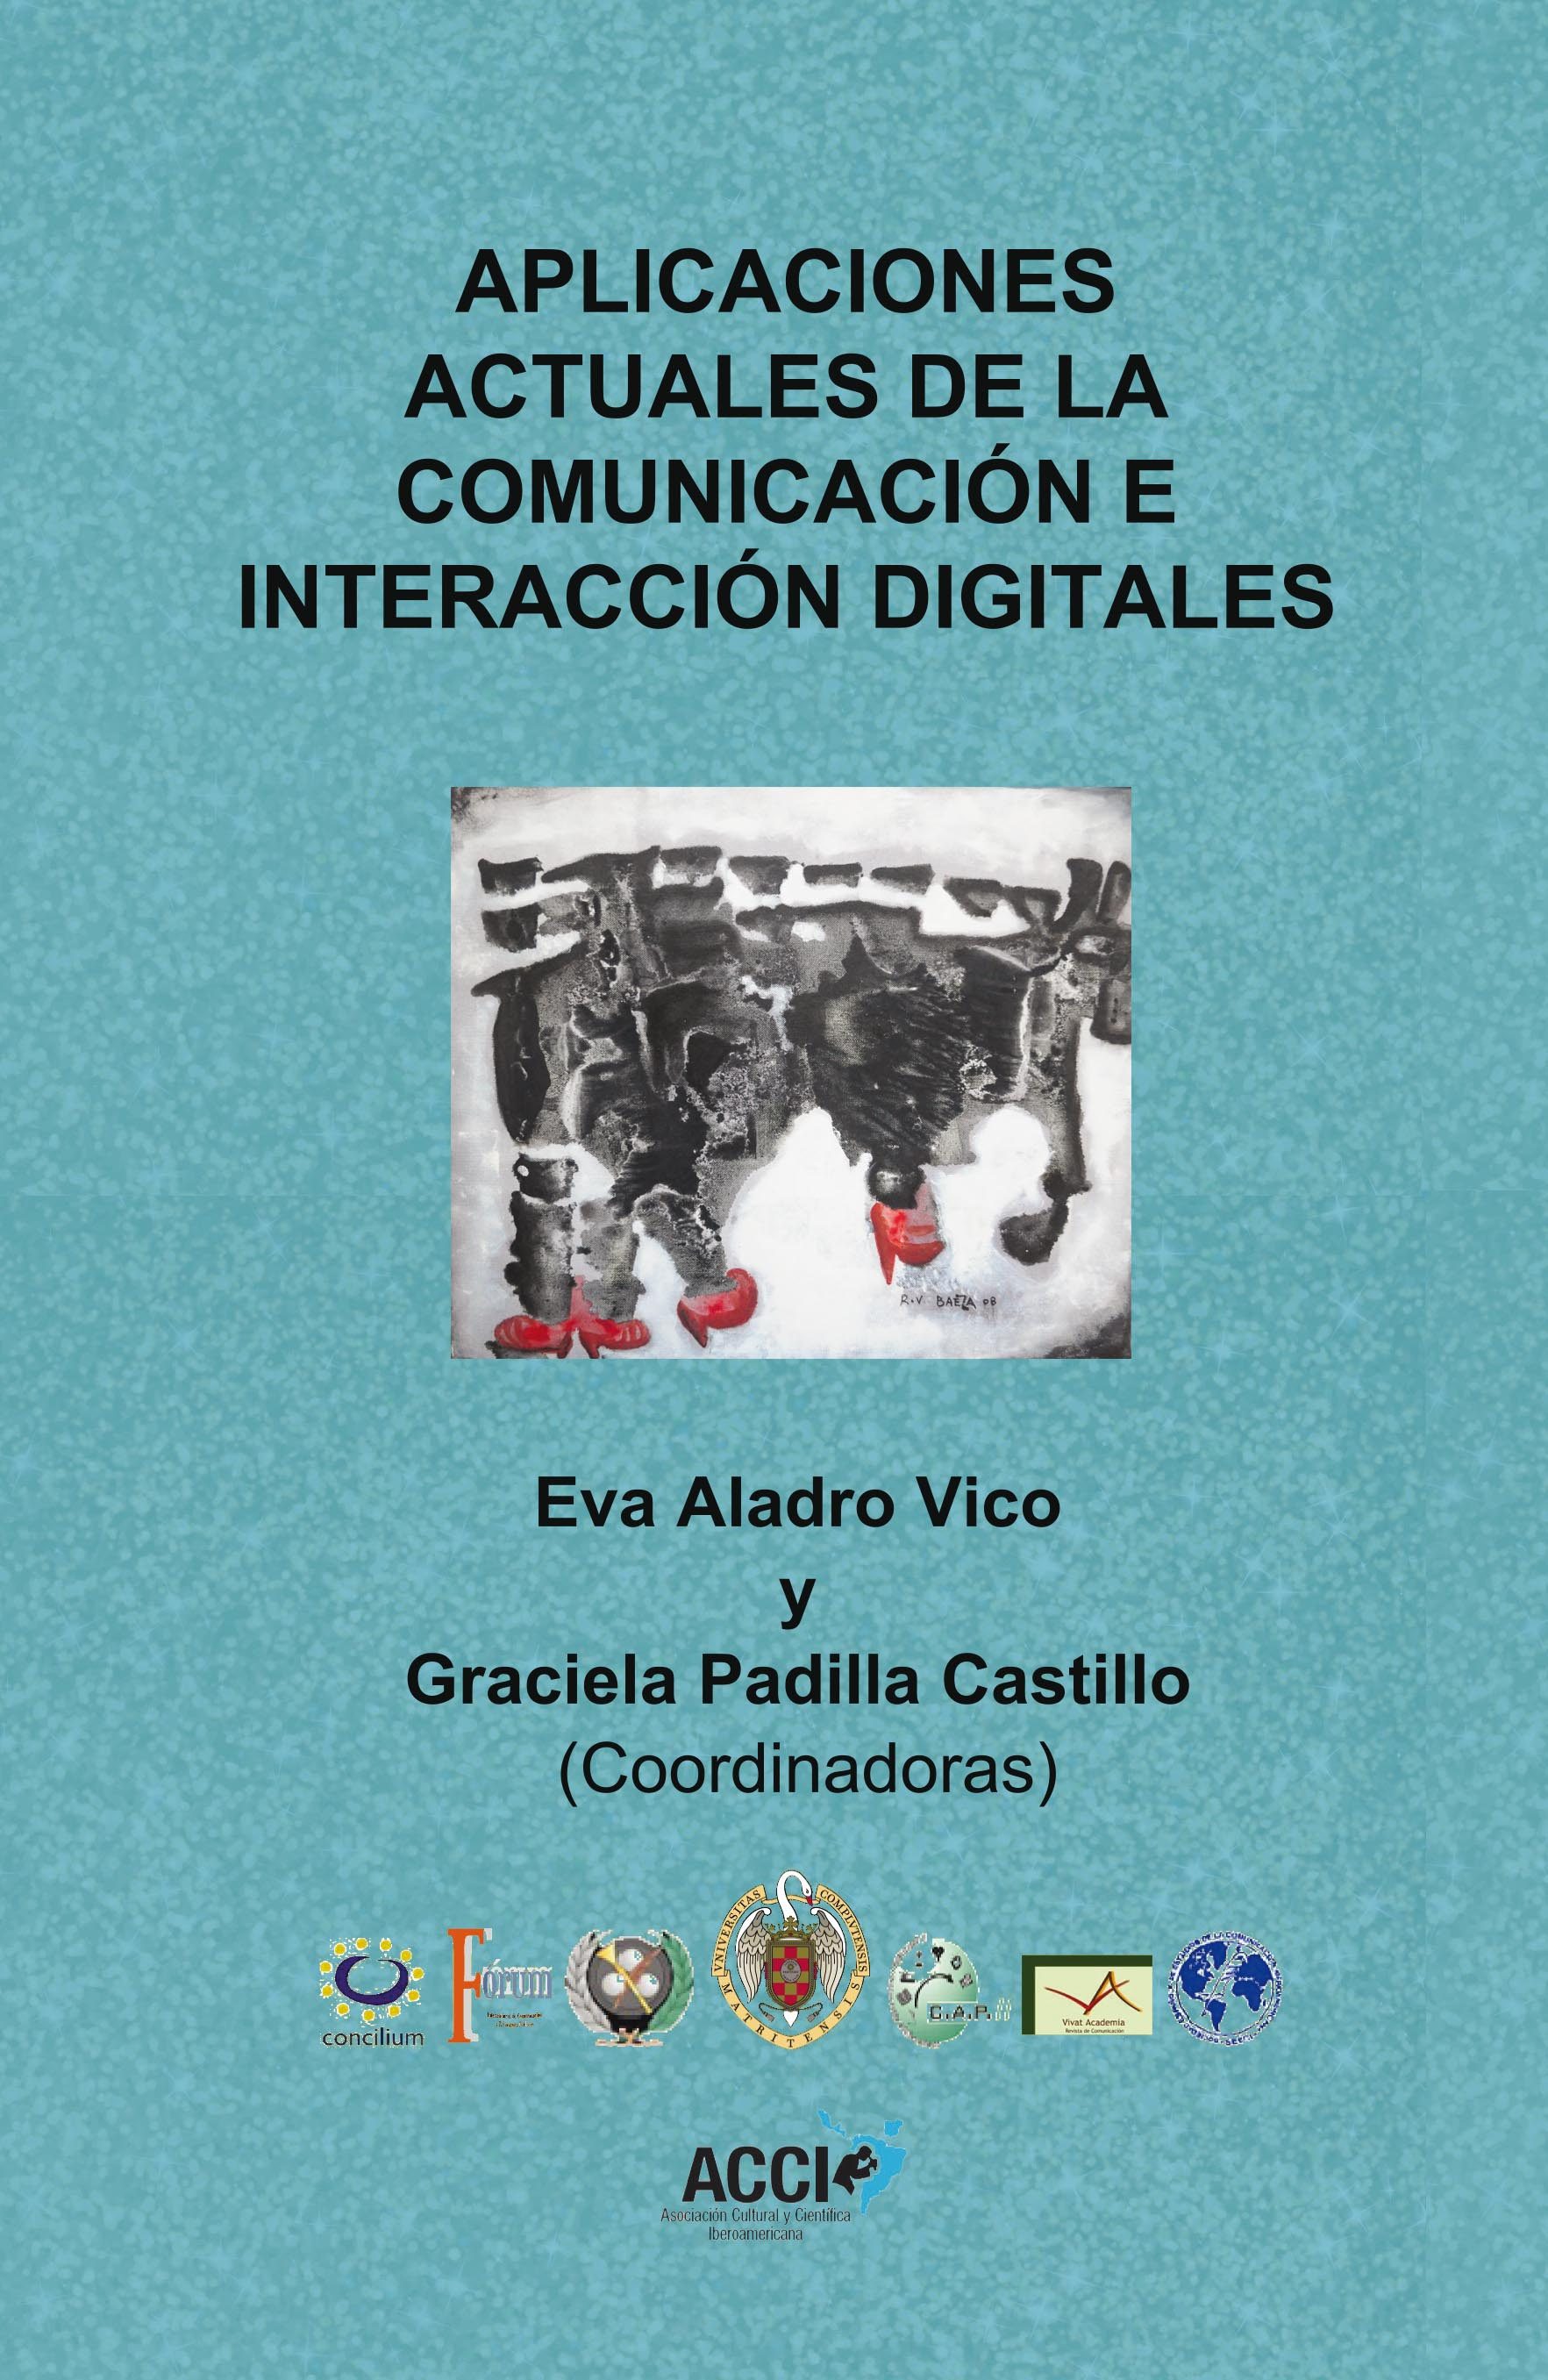 Imagen de portada del libro Aplicaciones actuales de la comunicación e interacción digitales